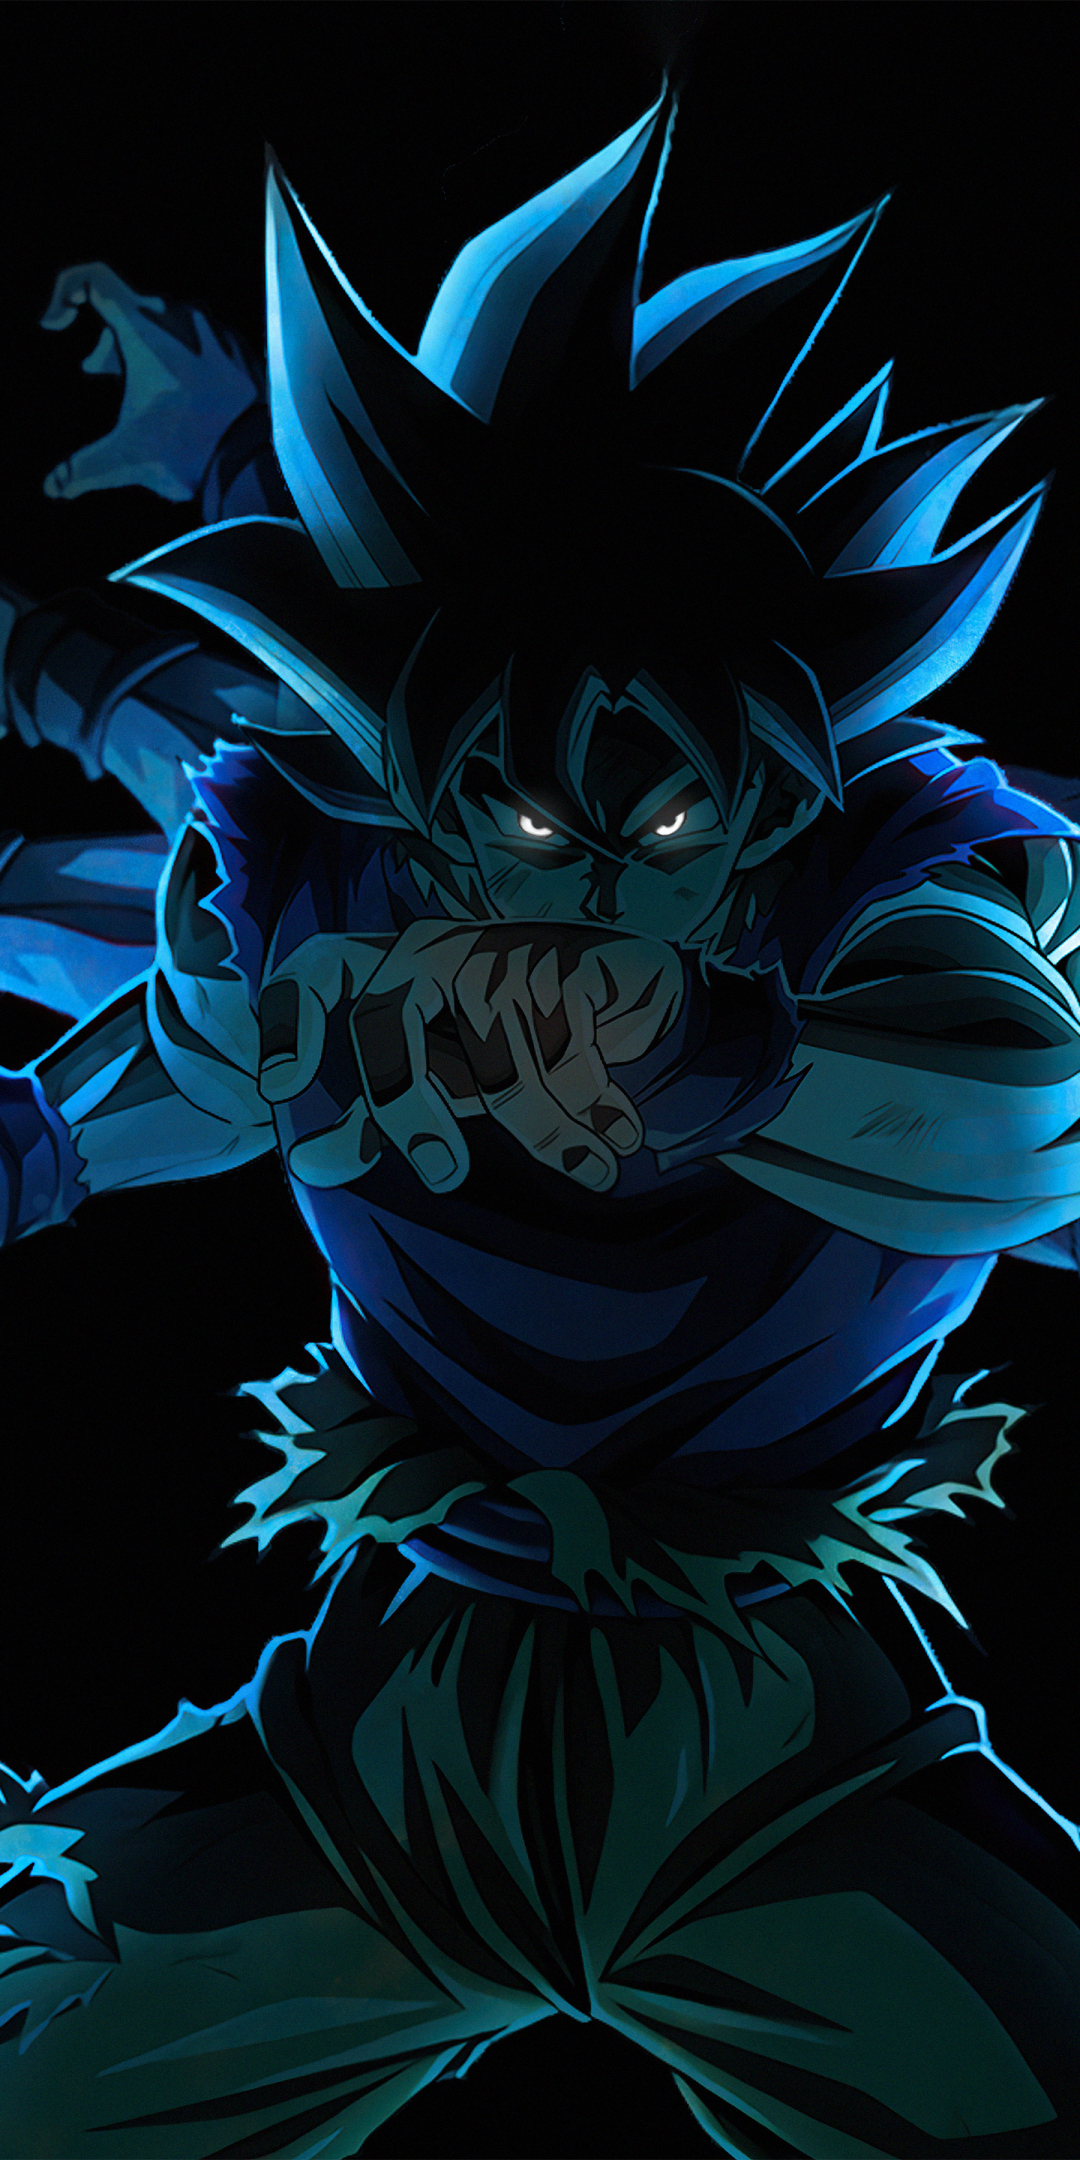 Son Goku, Dragon Ball Super, ultra instinct, multiple hands, 1080x2160 wallpaper